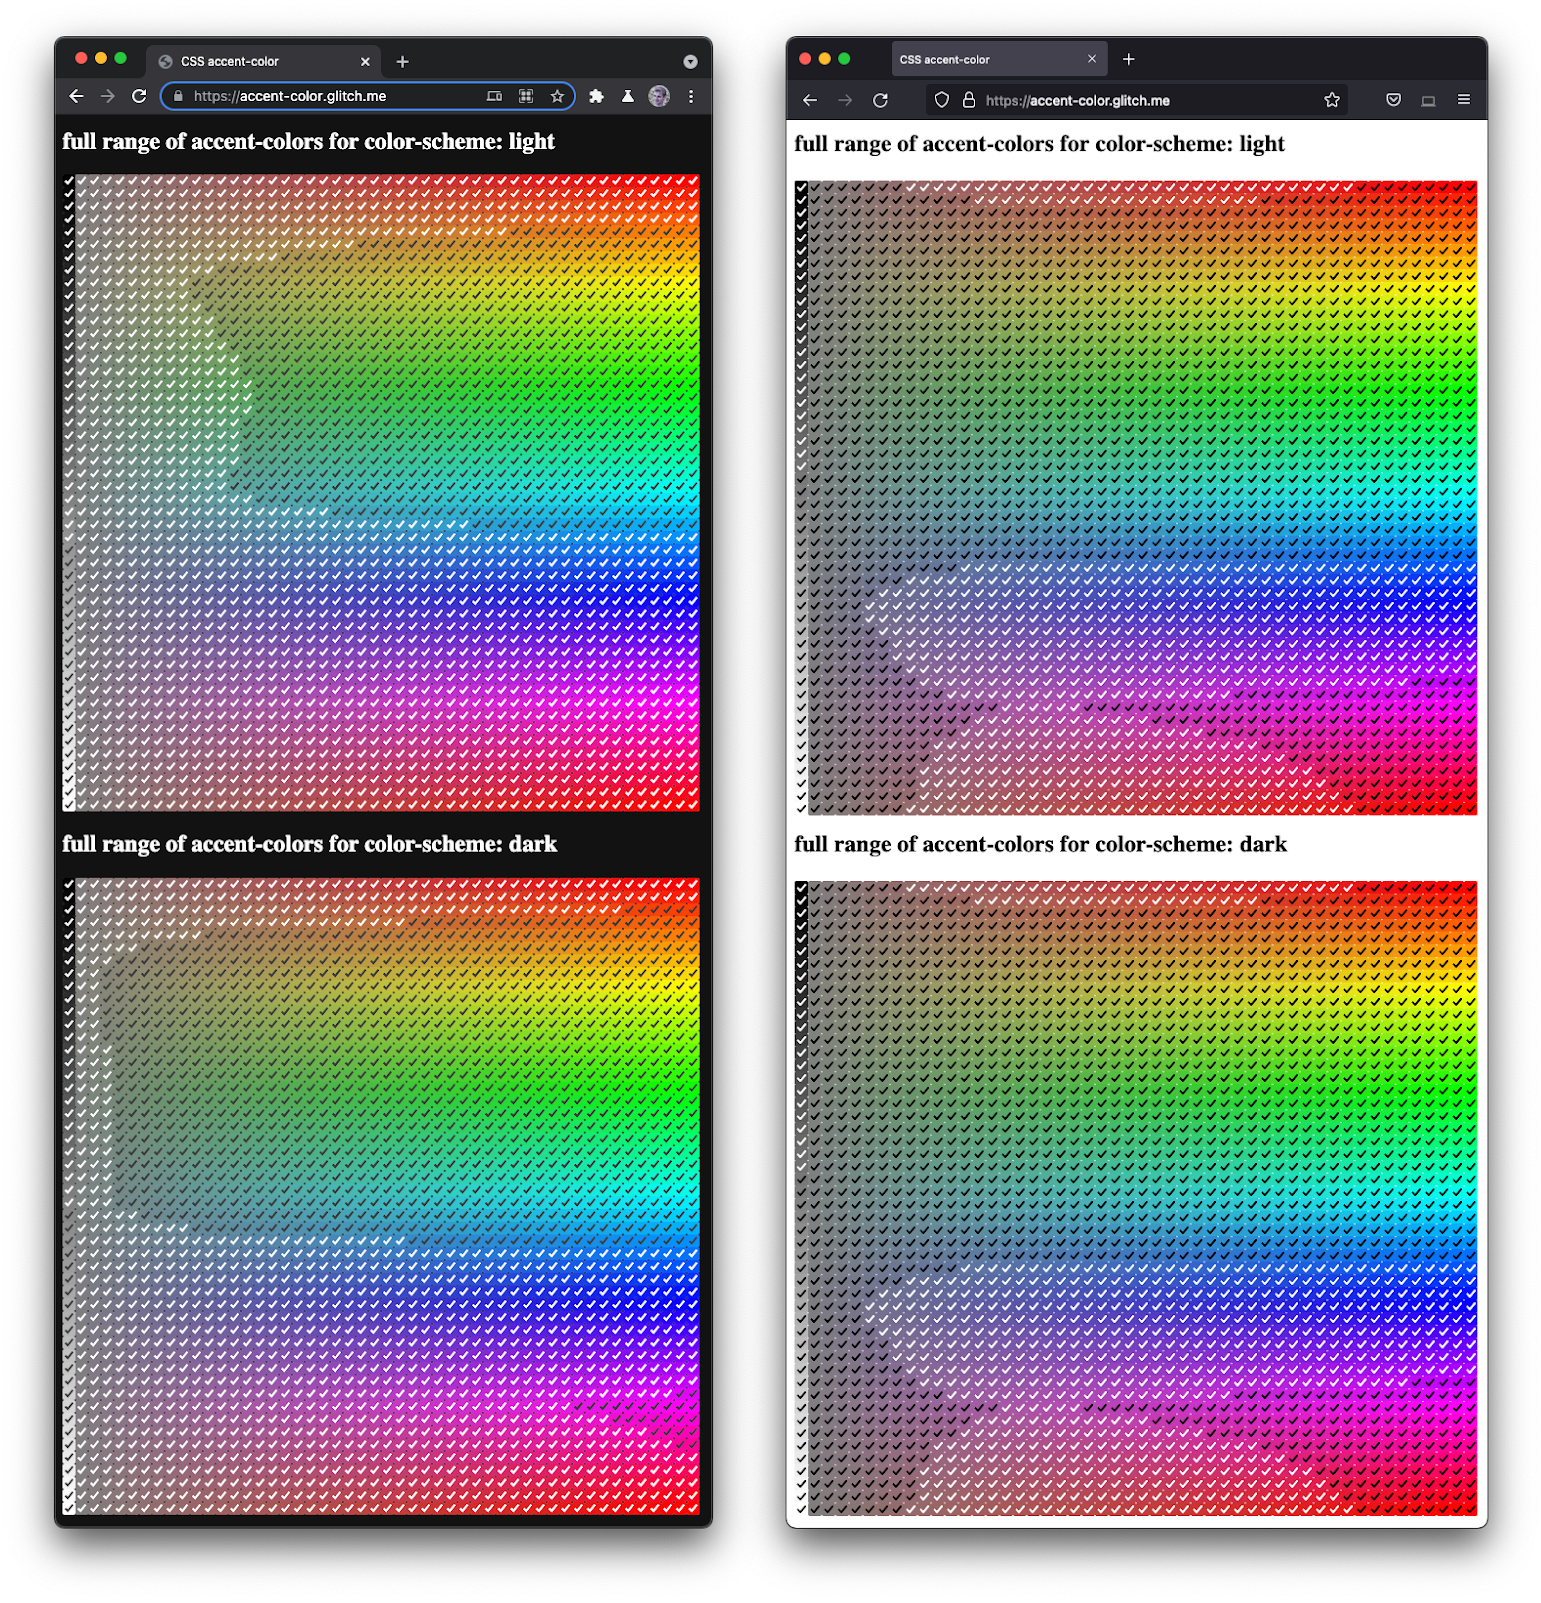 Zrzut ekranu Firefoksa i Chromium obok siebie
  z pełnym spektrum pól wyboru w różnych odcieniach i ciemnościach.